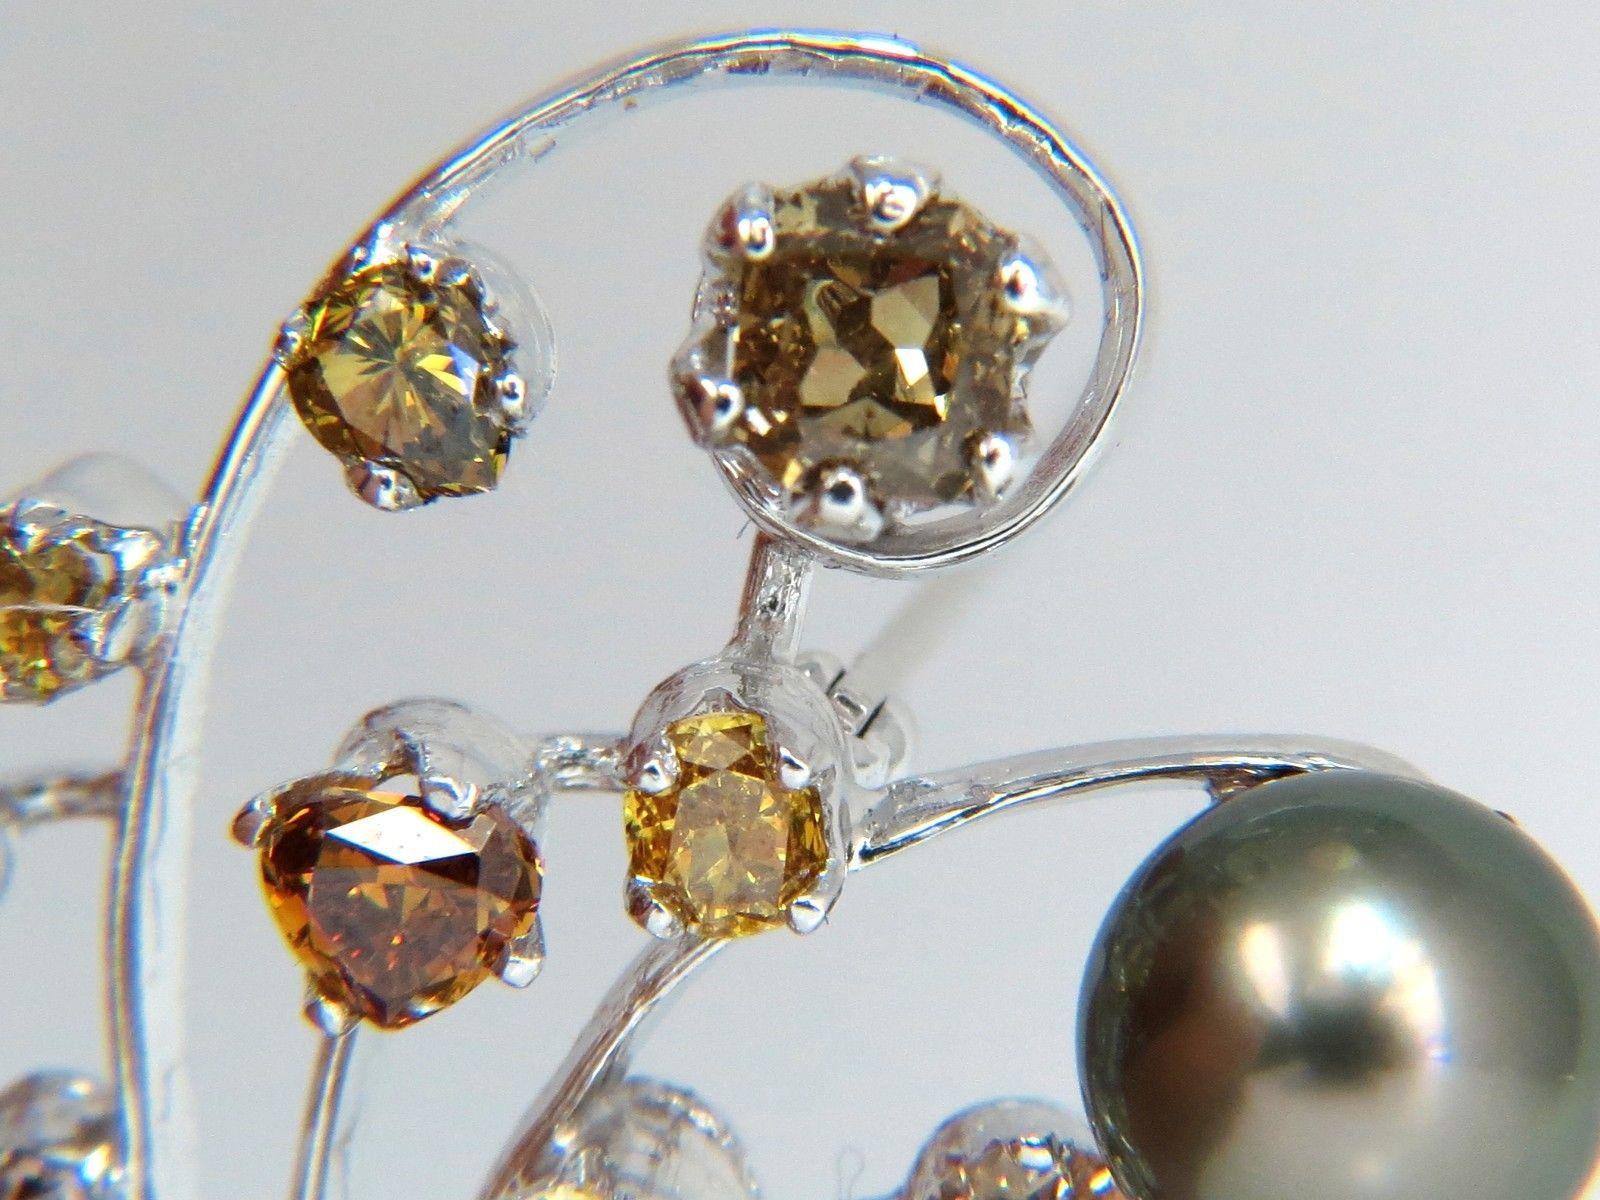 Aus den Avis Diamant-Kollektionen:

6.00ct. Natürliche Fancy farbige Diamanten / Perlen Brosche Pin.

Die wunderschöne Brosche zeigt ein Blumenbündel in 3D.

Ausgefallene gelbe, orangefarbene, braune, sehr hellrosa und weiße Diamanten.

Bereich Vs-2